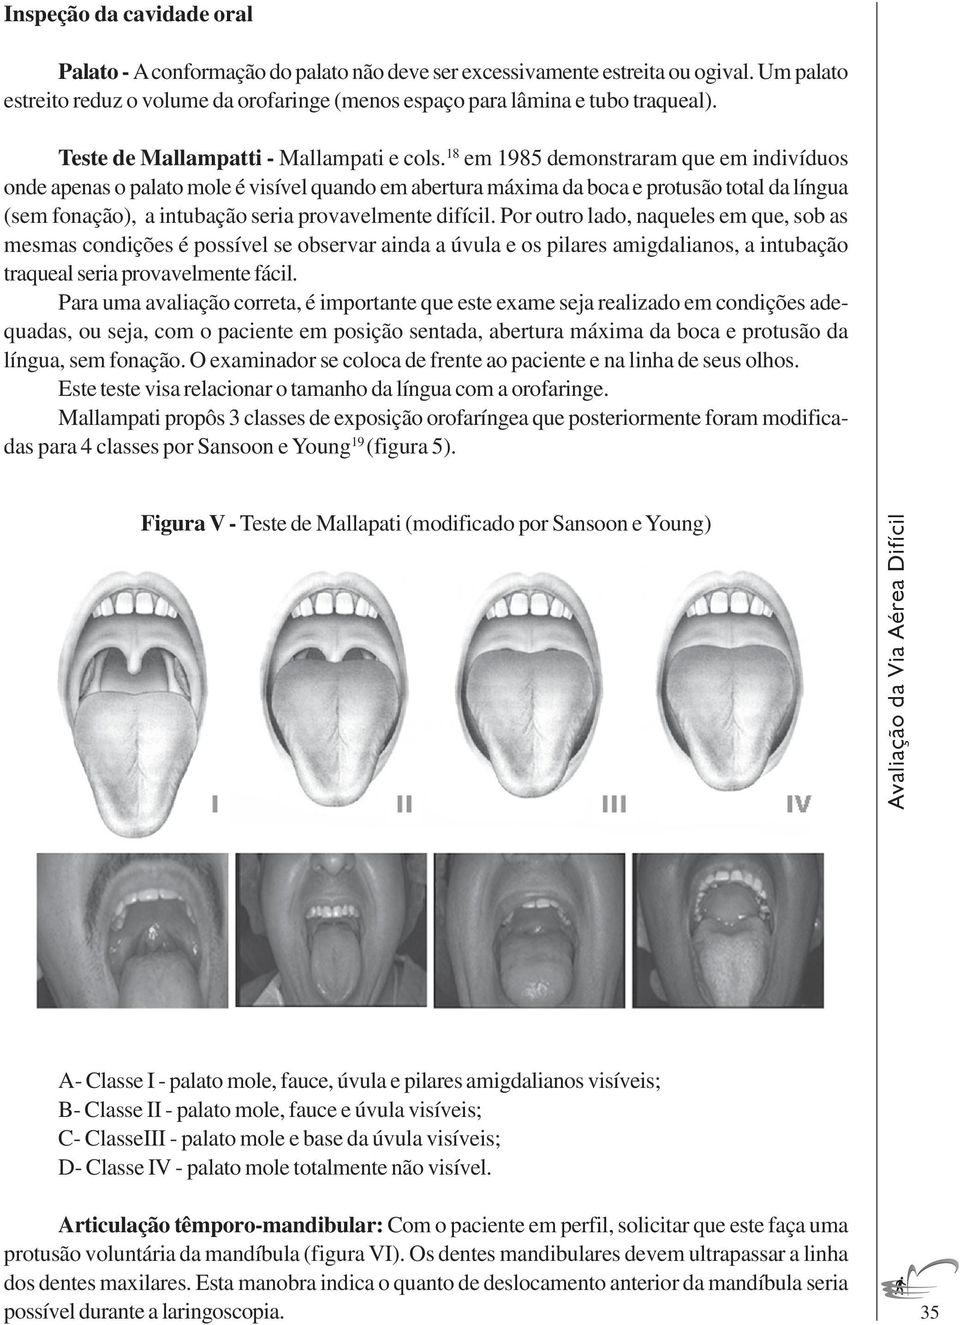 18 em 1985 demonstraram que em indivíduos onde apenas o palato mole é visível quando em abertura máxima da boca e protusão total da língua (sem fonação), a intubação seria provavelmente difícil.